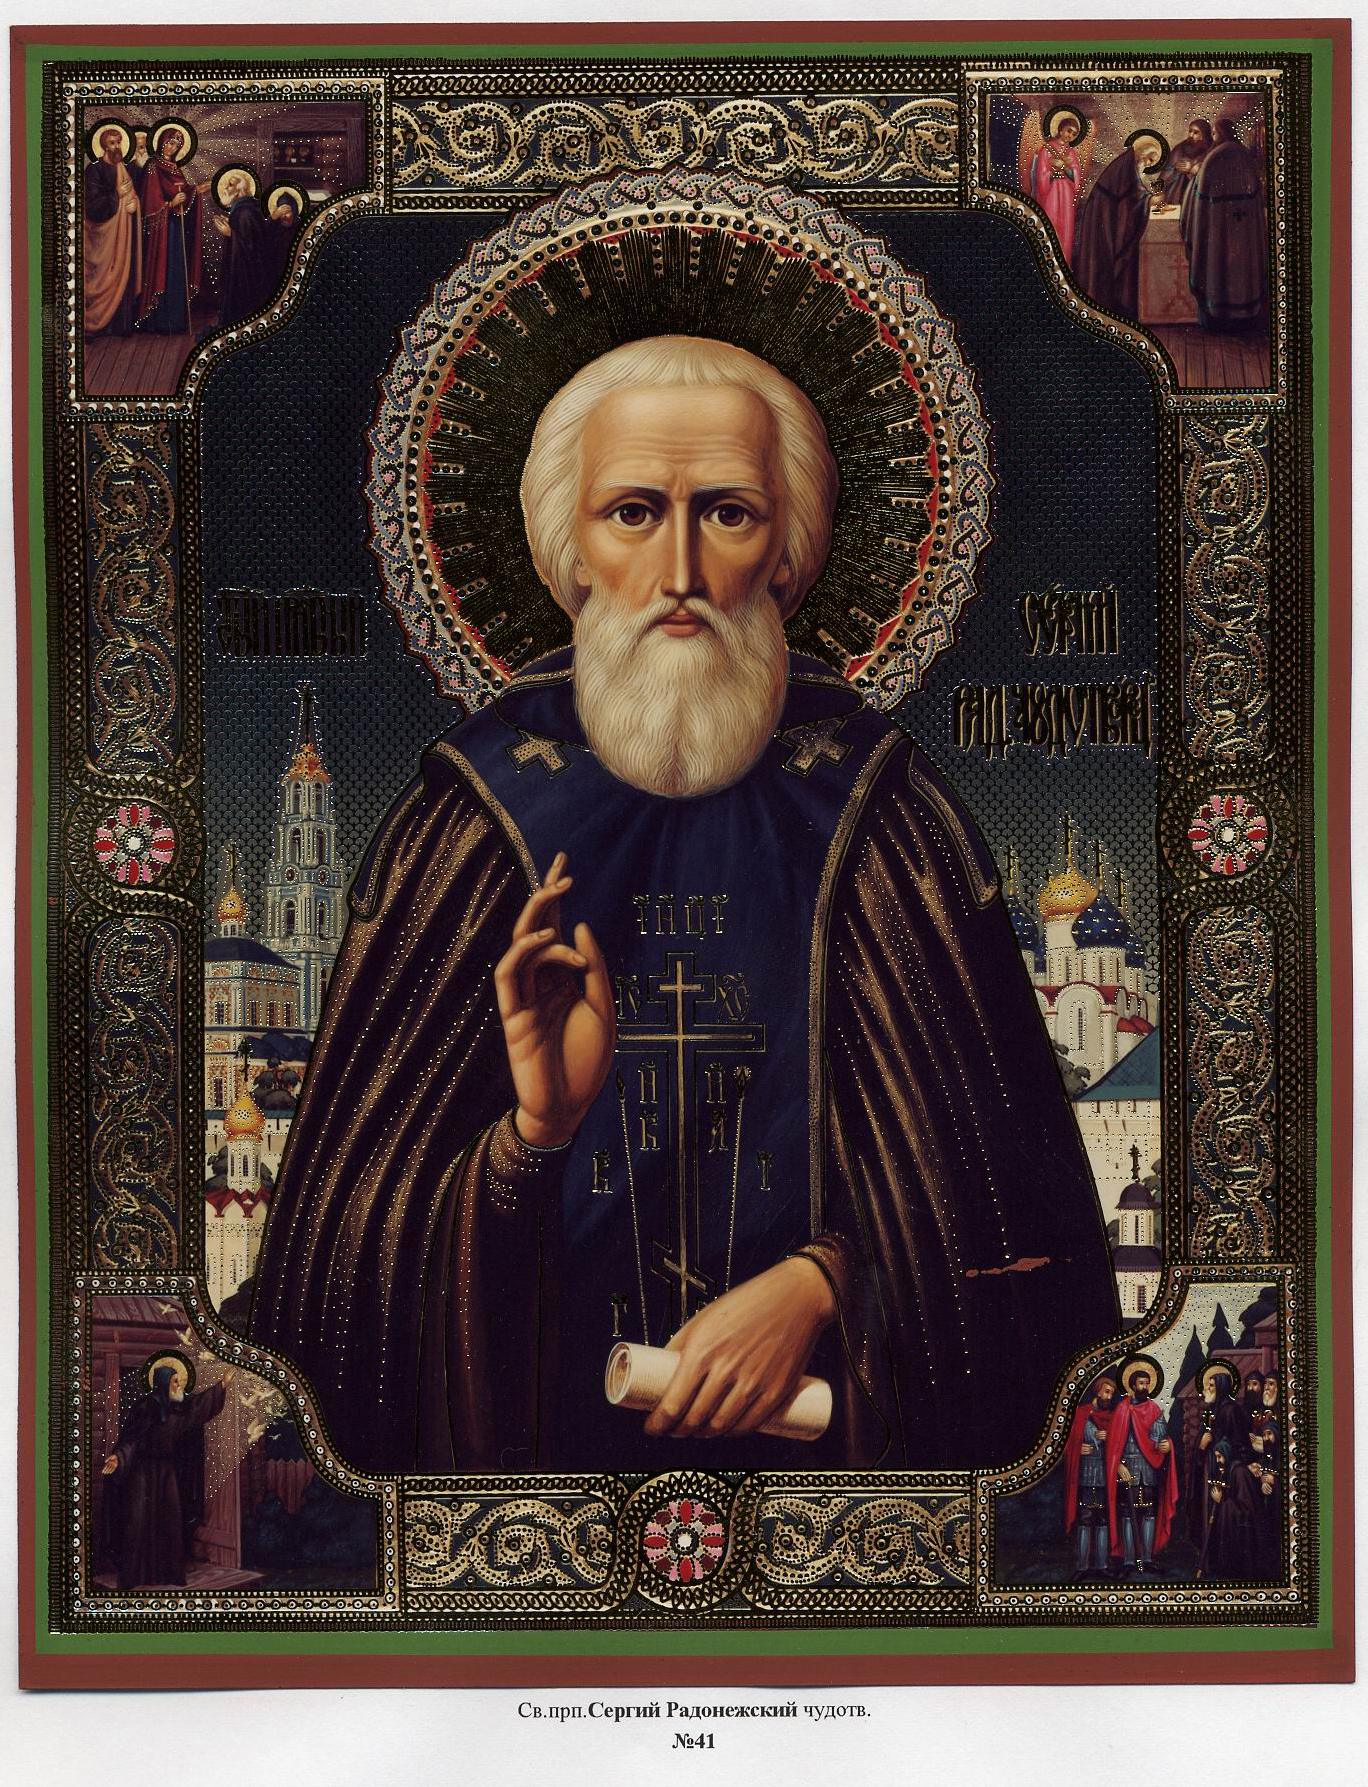 Самые почитаемые святые. Икона Сергия Радонежского.